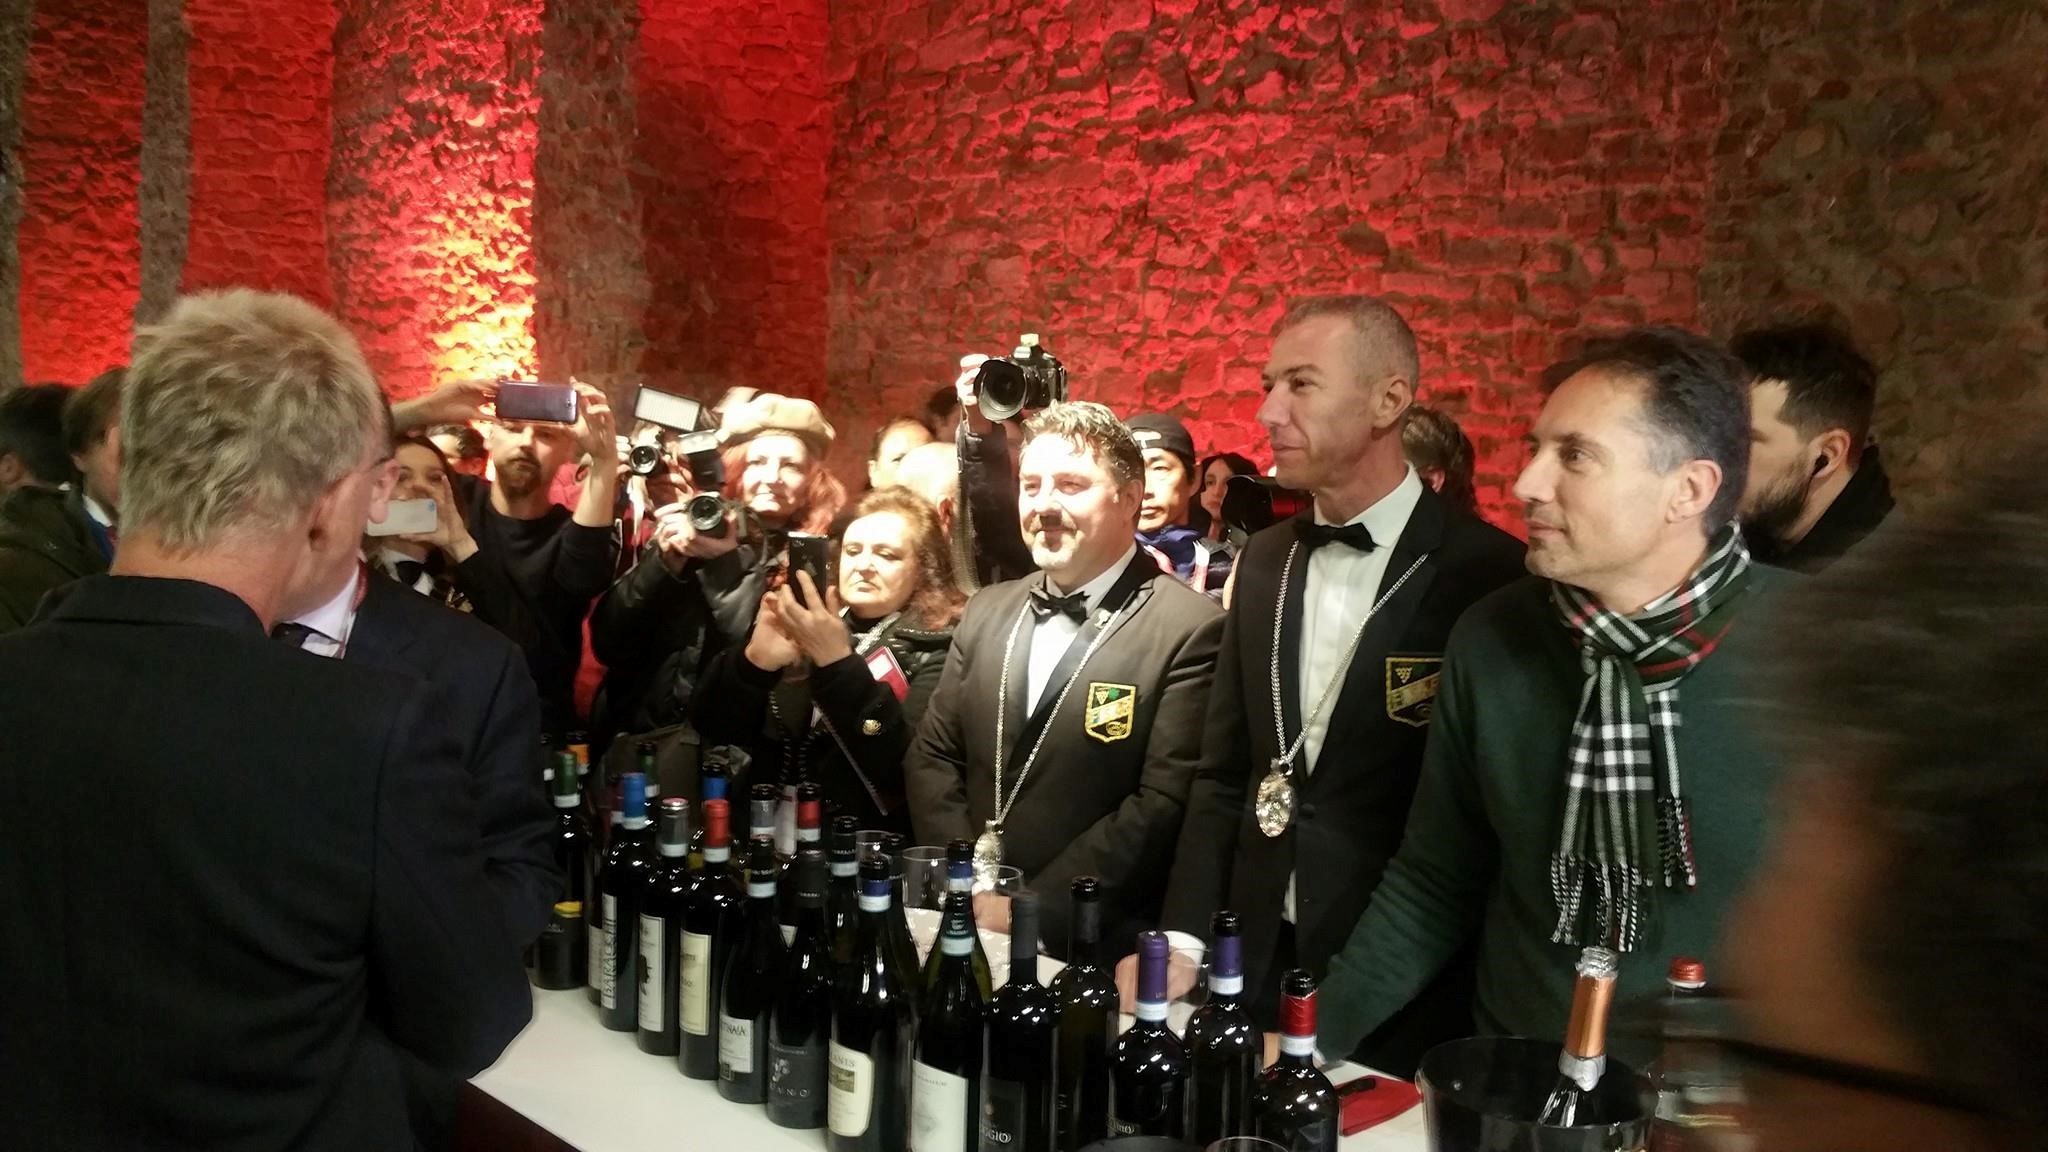 Anteprime di Toscana e Buy Wine: successo per i vini di Cortona degustati anche da Sting